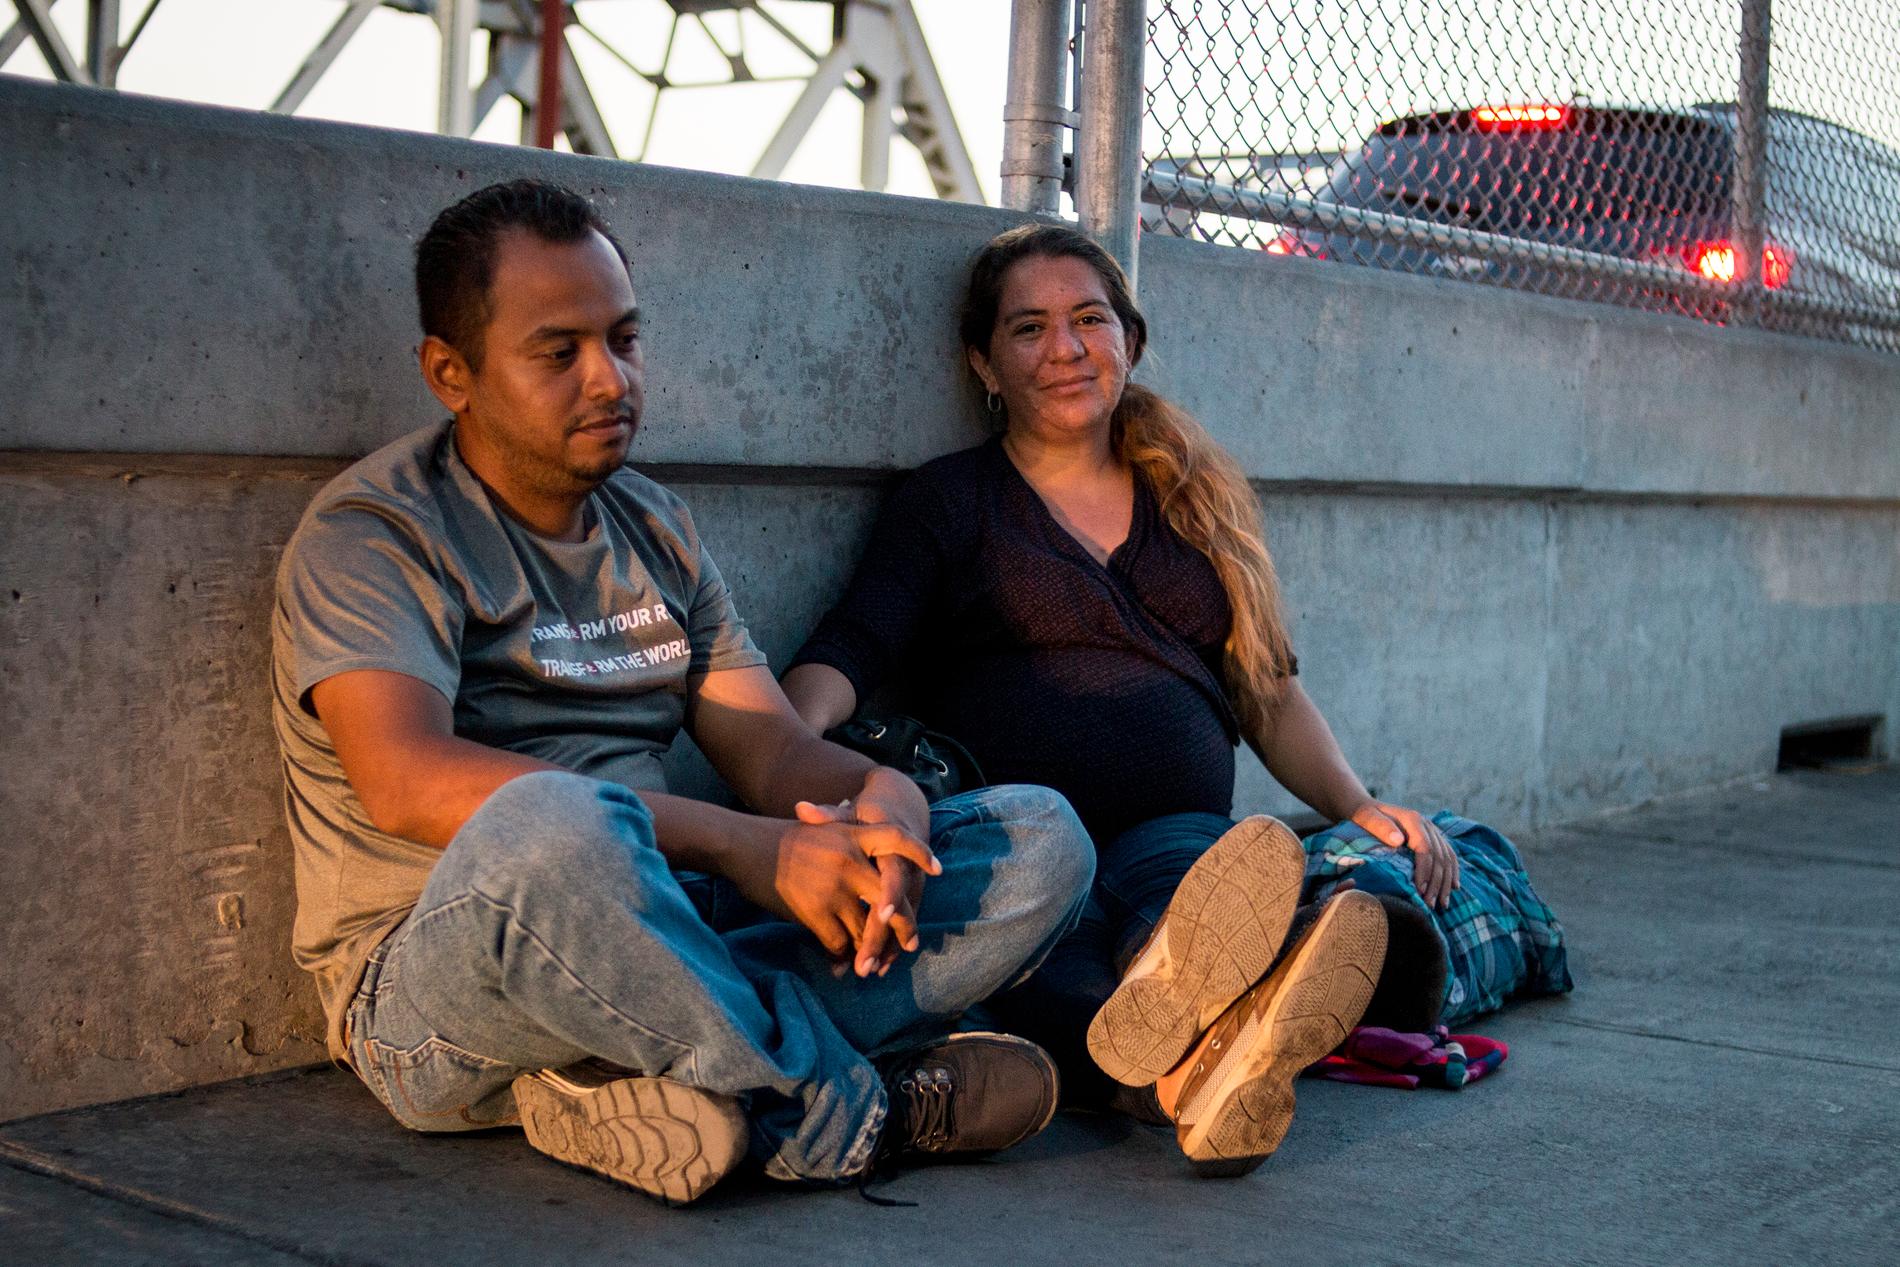 Ana Paz Rodriguez är gravid i sjätte månaden och har rest från San Pedro Sula, Honduras till gränsstaden Matamoros tillsammans med sin femårige son Hassan Bustillo Paz får att ansöka om asyl i USA. Hon väntar vid gränsövergången tillsammans med andra migranter.